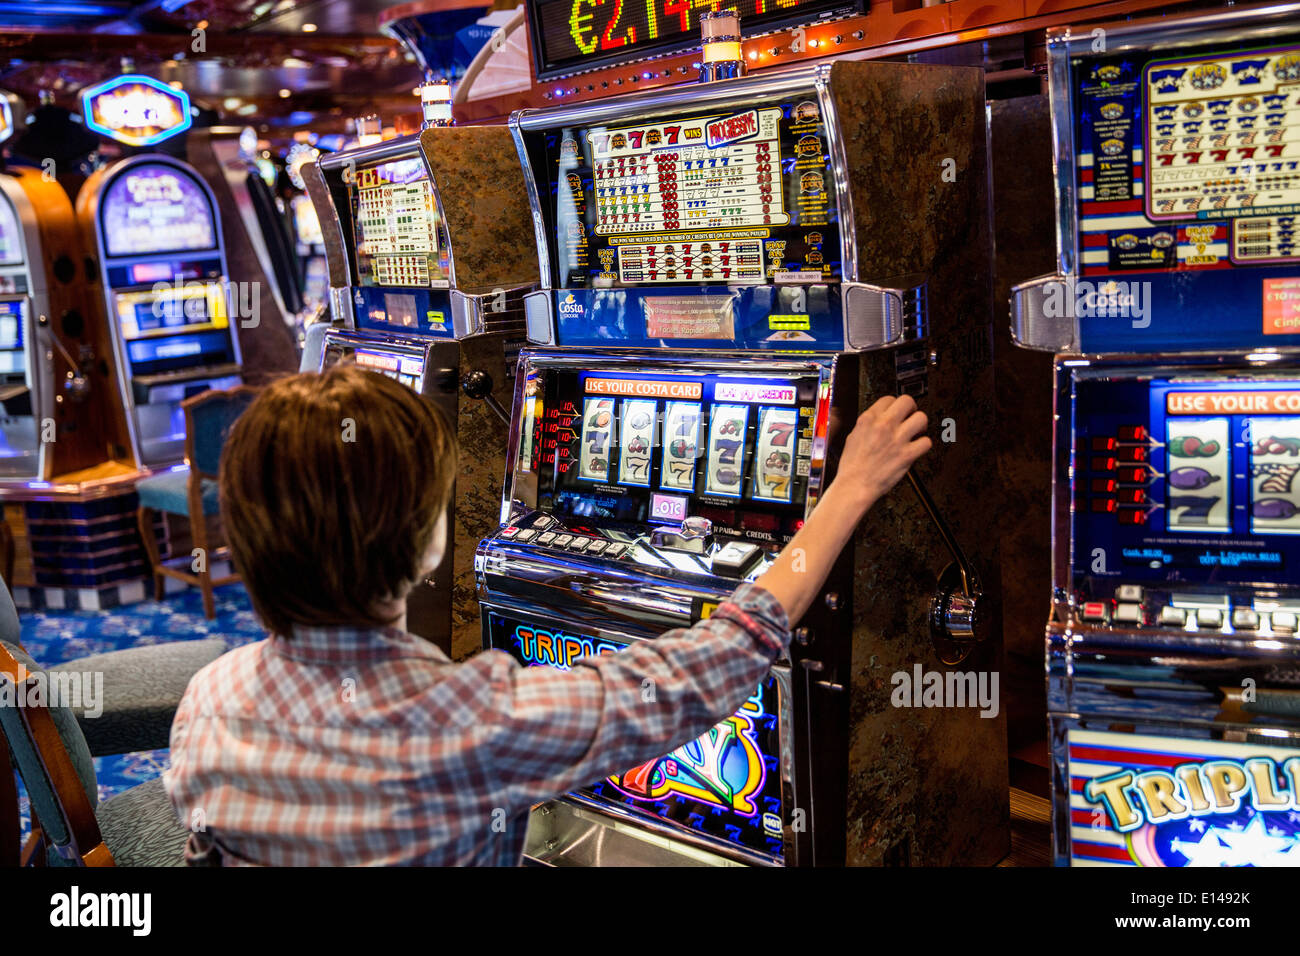 Emirats arabes unis, dubaï, navire de croisière Costa Fortuna, société de l'Italie. Gambling Hall. Woman playing slot machine Banque D'Images